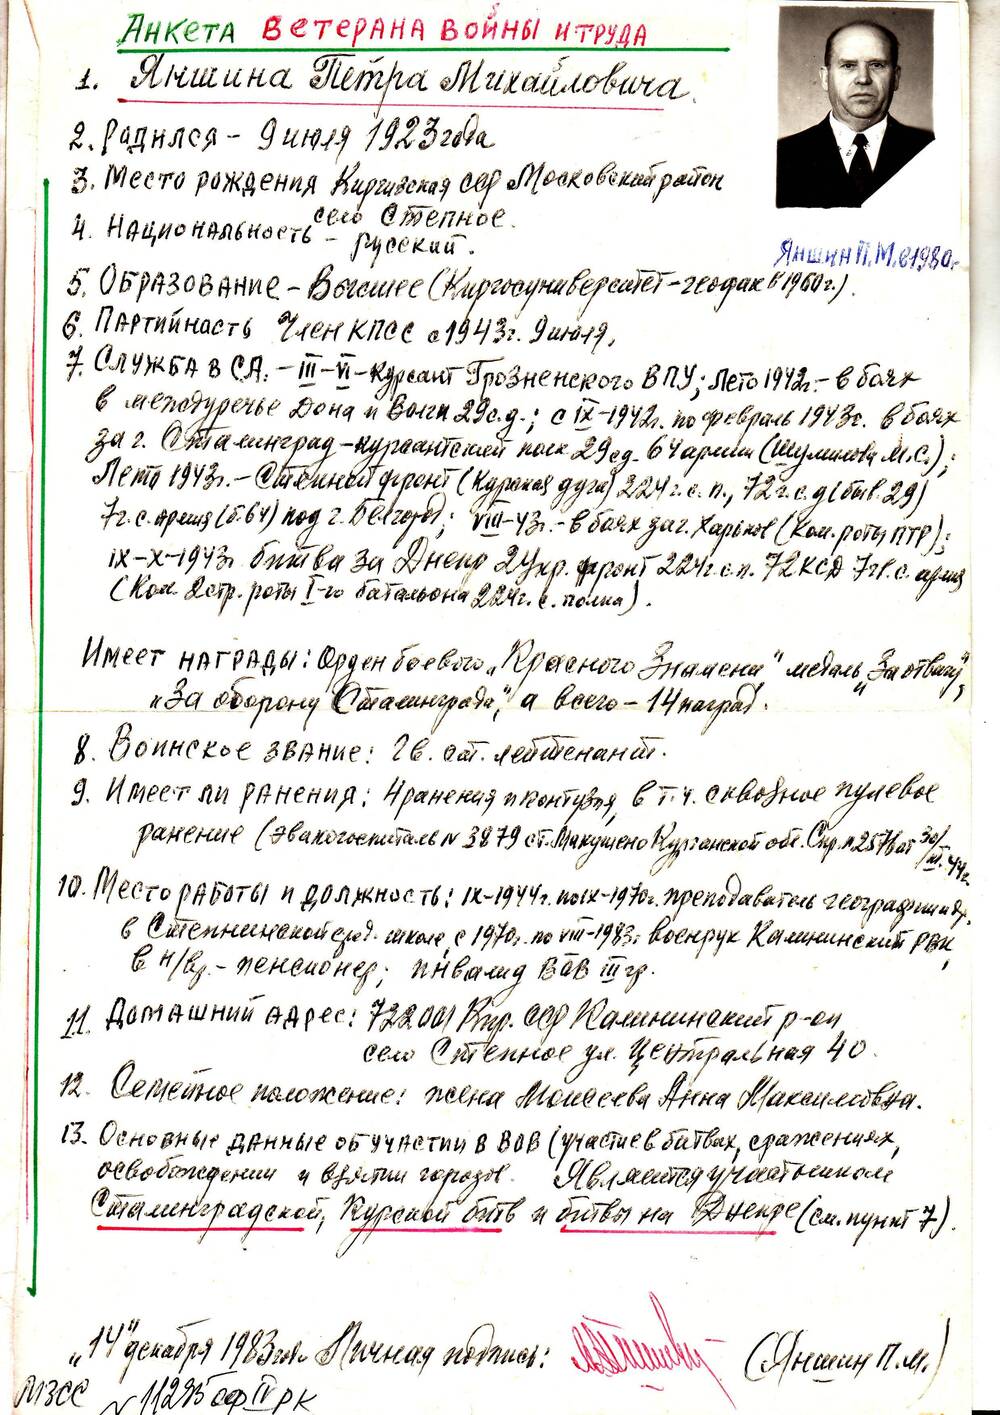 Анкета ветерана 57 армии Яншина Петра Михайловича. рукопись на 1 листе с  ч/б  фото – 6х4.5 см.